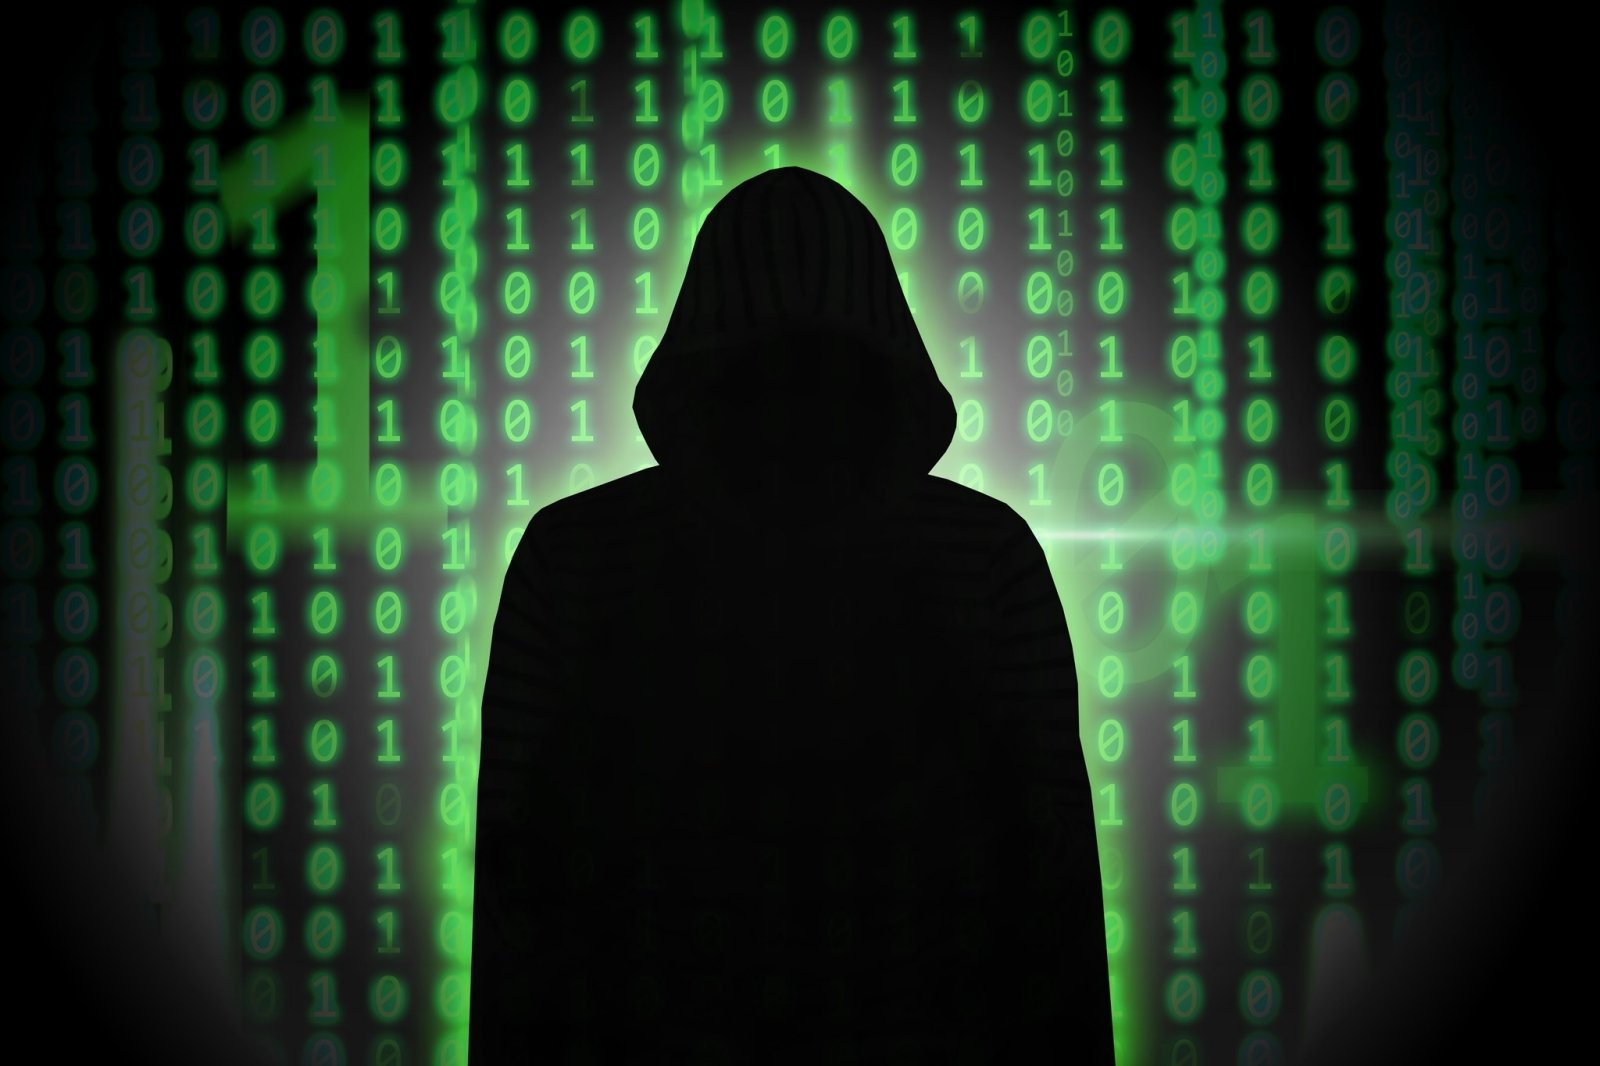 Gli hacker russi che hanno dichiarato guerra informatica alla Lituania sono stati smascherati: un lituano potrebbe essere tra gli smascherati